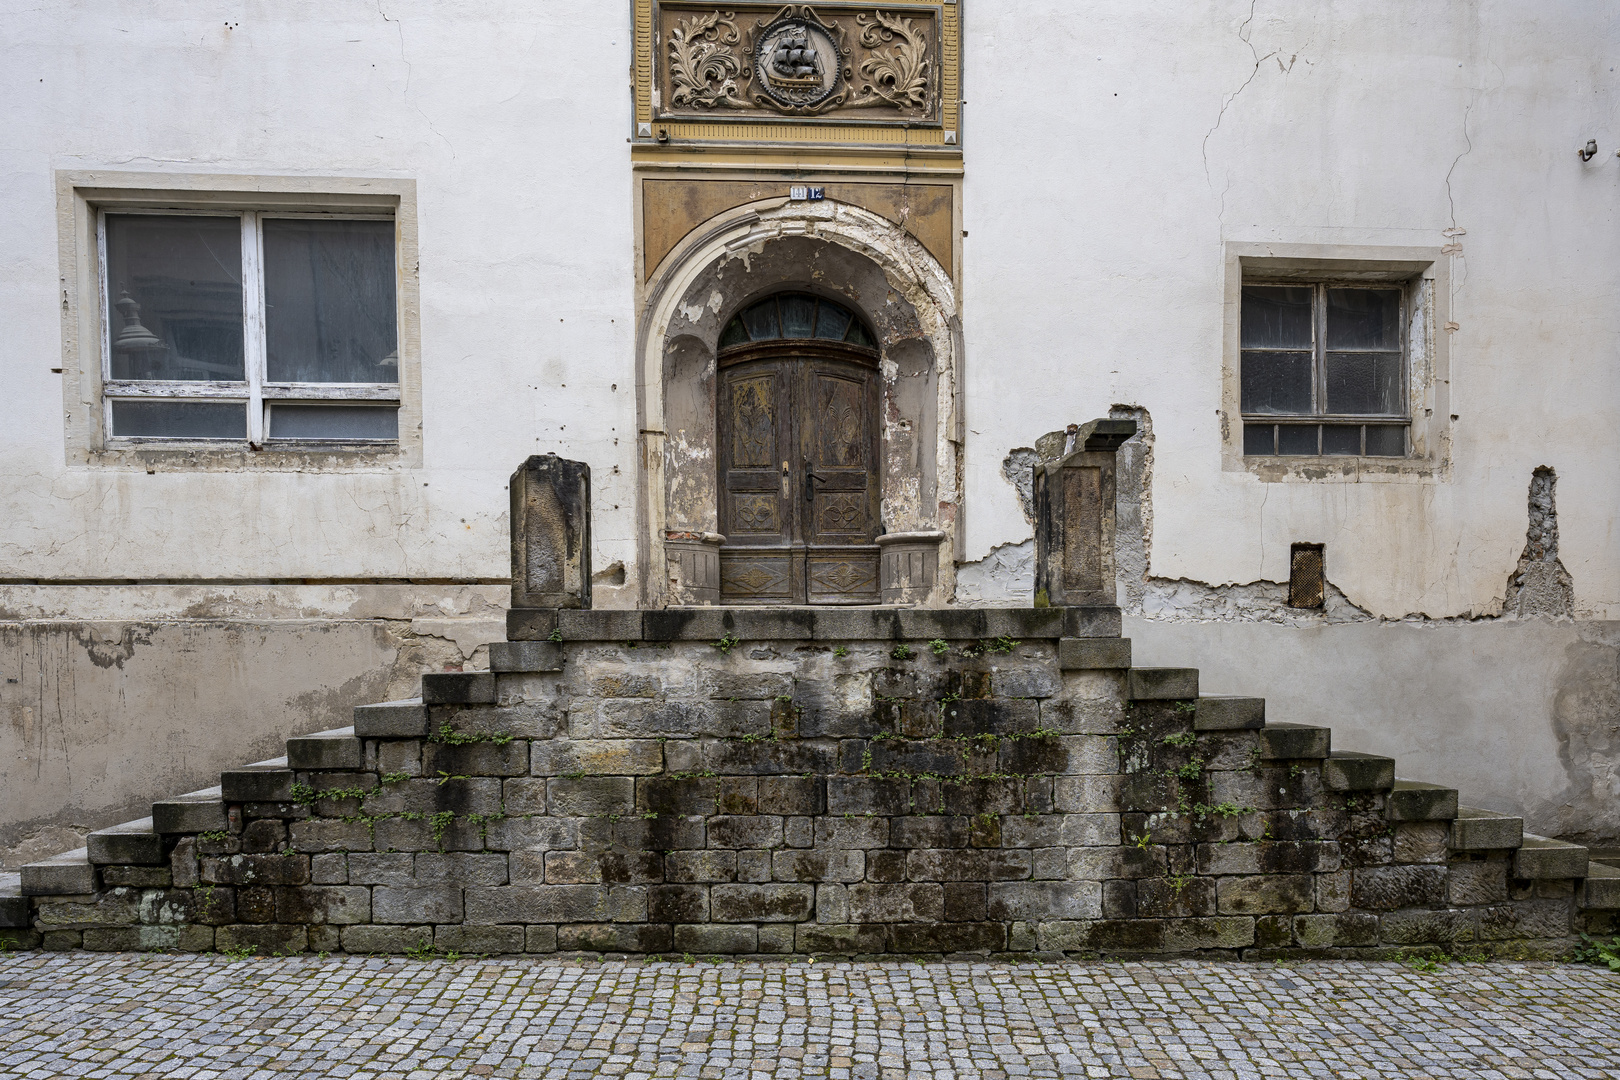 Marode in Bad Schandau, das alte Stadthaus